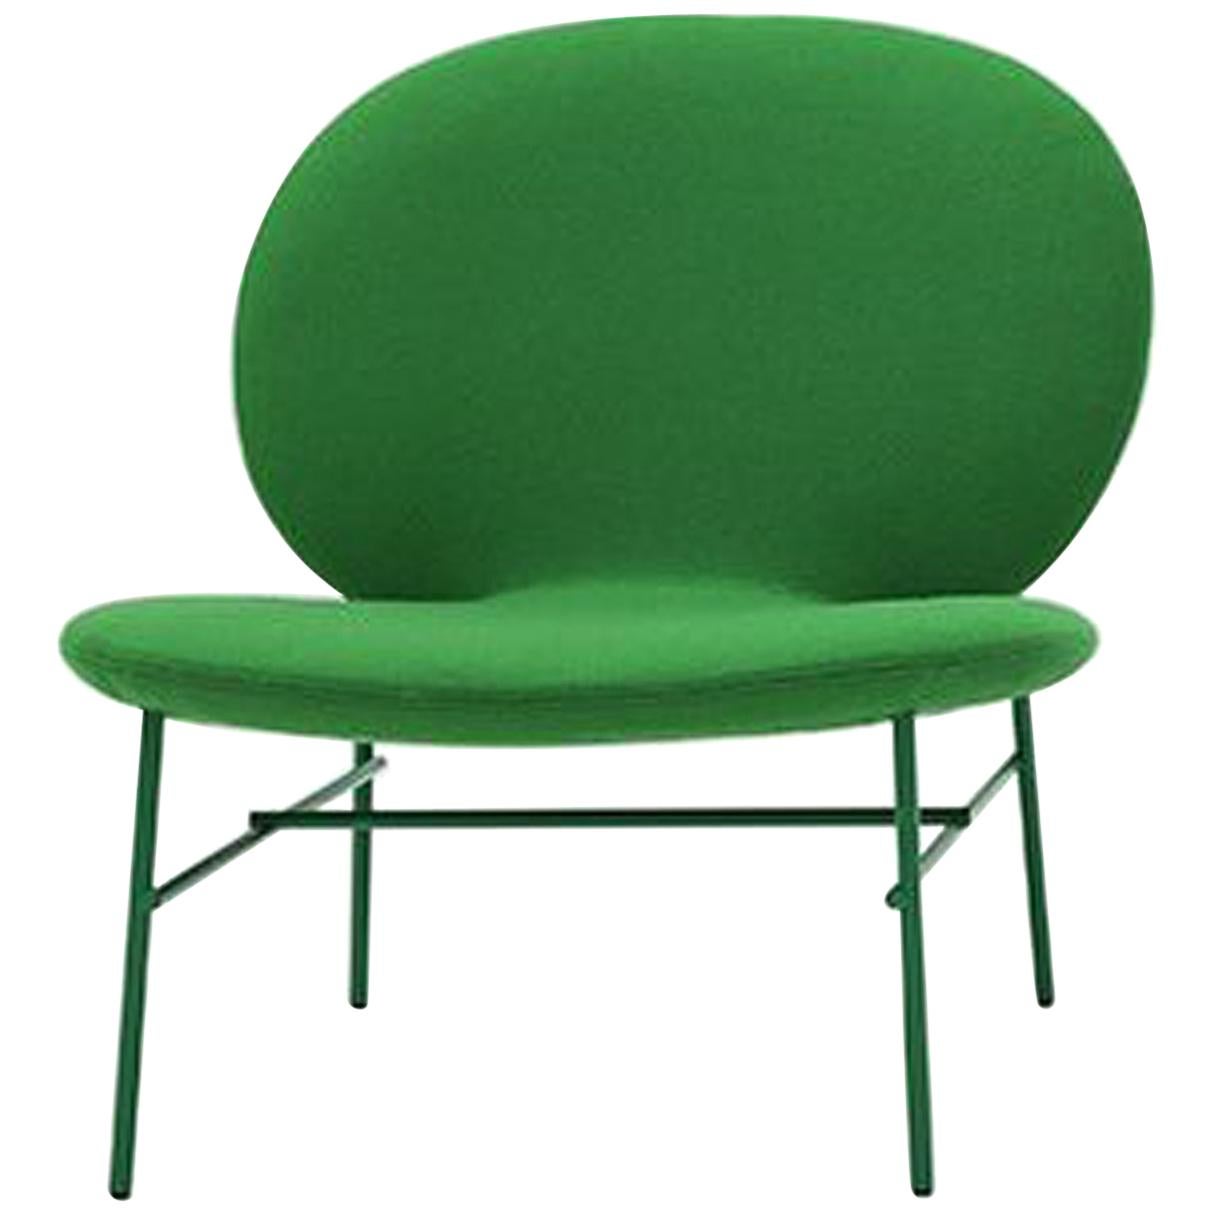 Contemporary Tacchini Kelly E Chair Designed by Claesson Koivisto Rune For Sale